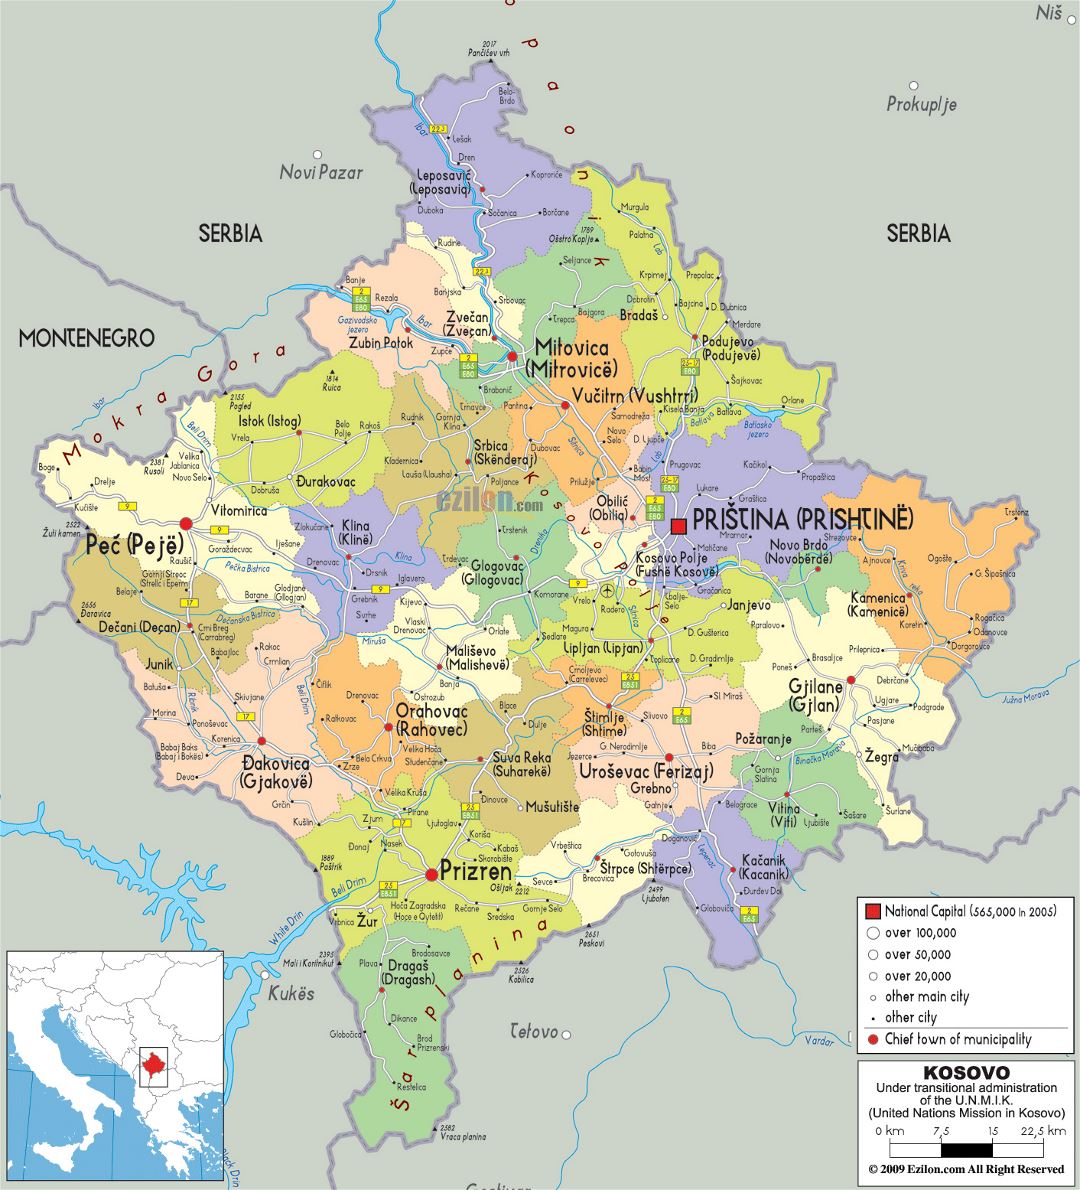 Grande mapa político y administrativo de Kosovo con carreteras, ciudades y aeropuertos